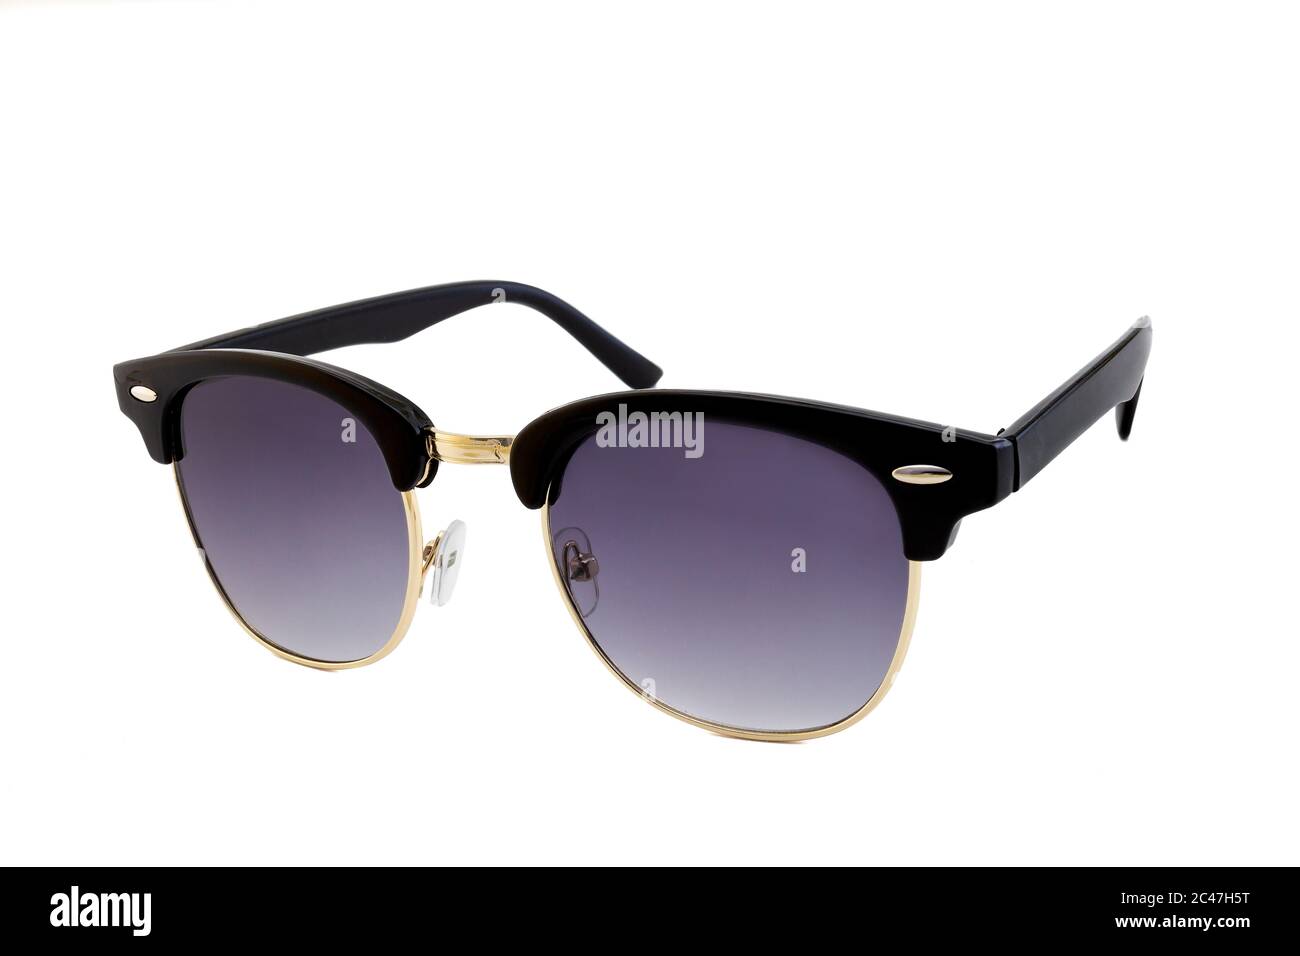 Noir épais cadres plat clubmaster lunettes de soleil avec fond rond or  cadres et clair bleu foncé lentilles isolées sur fond blanc. Vue latérale  Photo Stock - Alamy